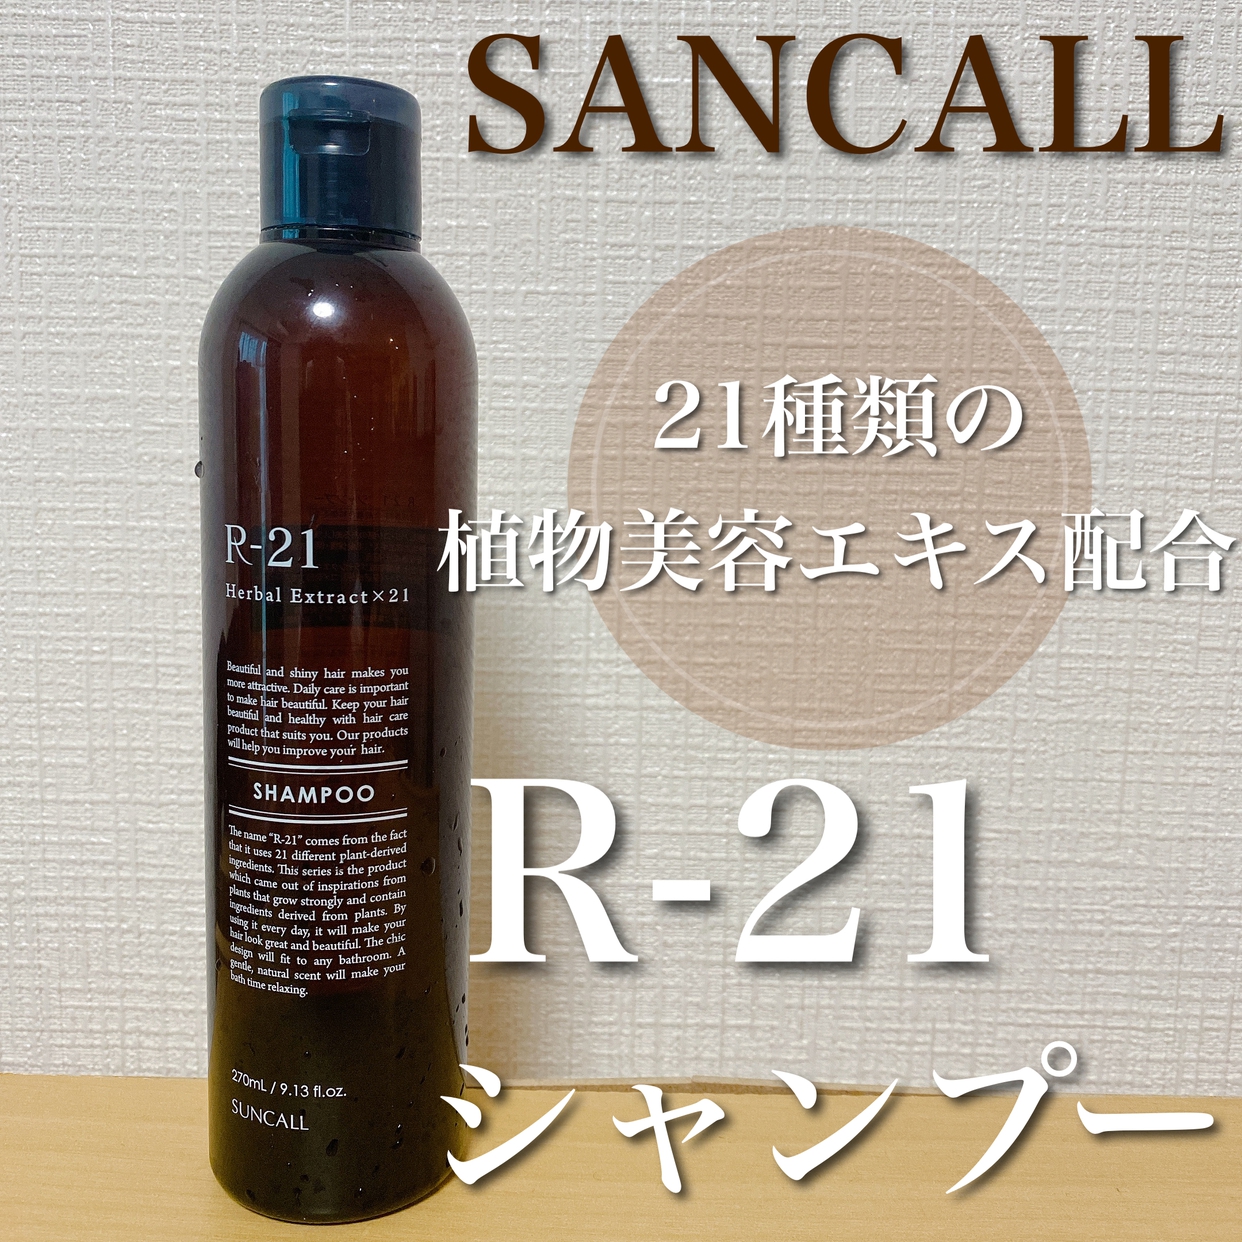 SUNCALL(サンコール) R-21 シャンプーの良い点・メリットに関するMICHIRUさんの口コミ画像1